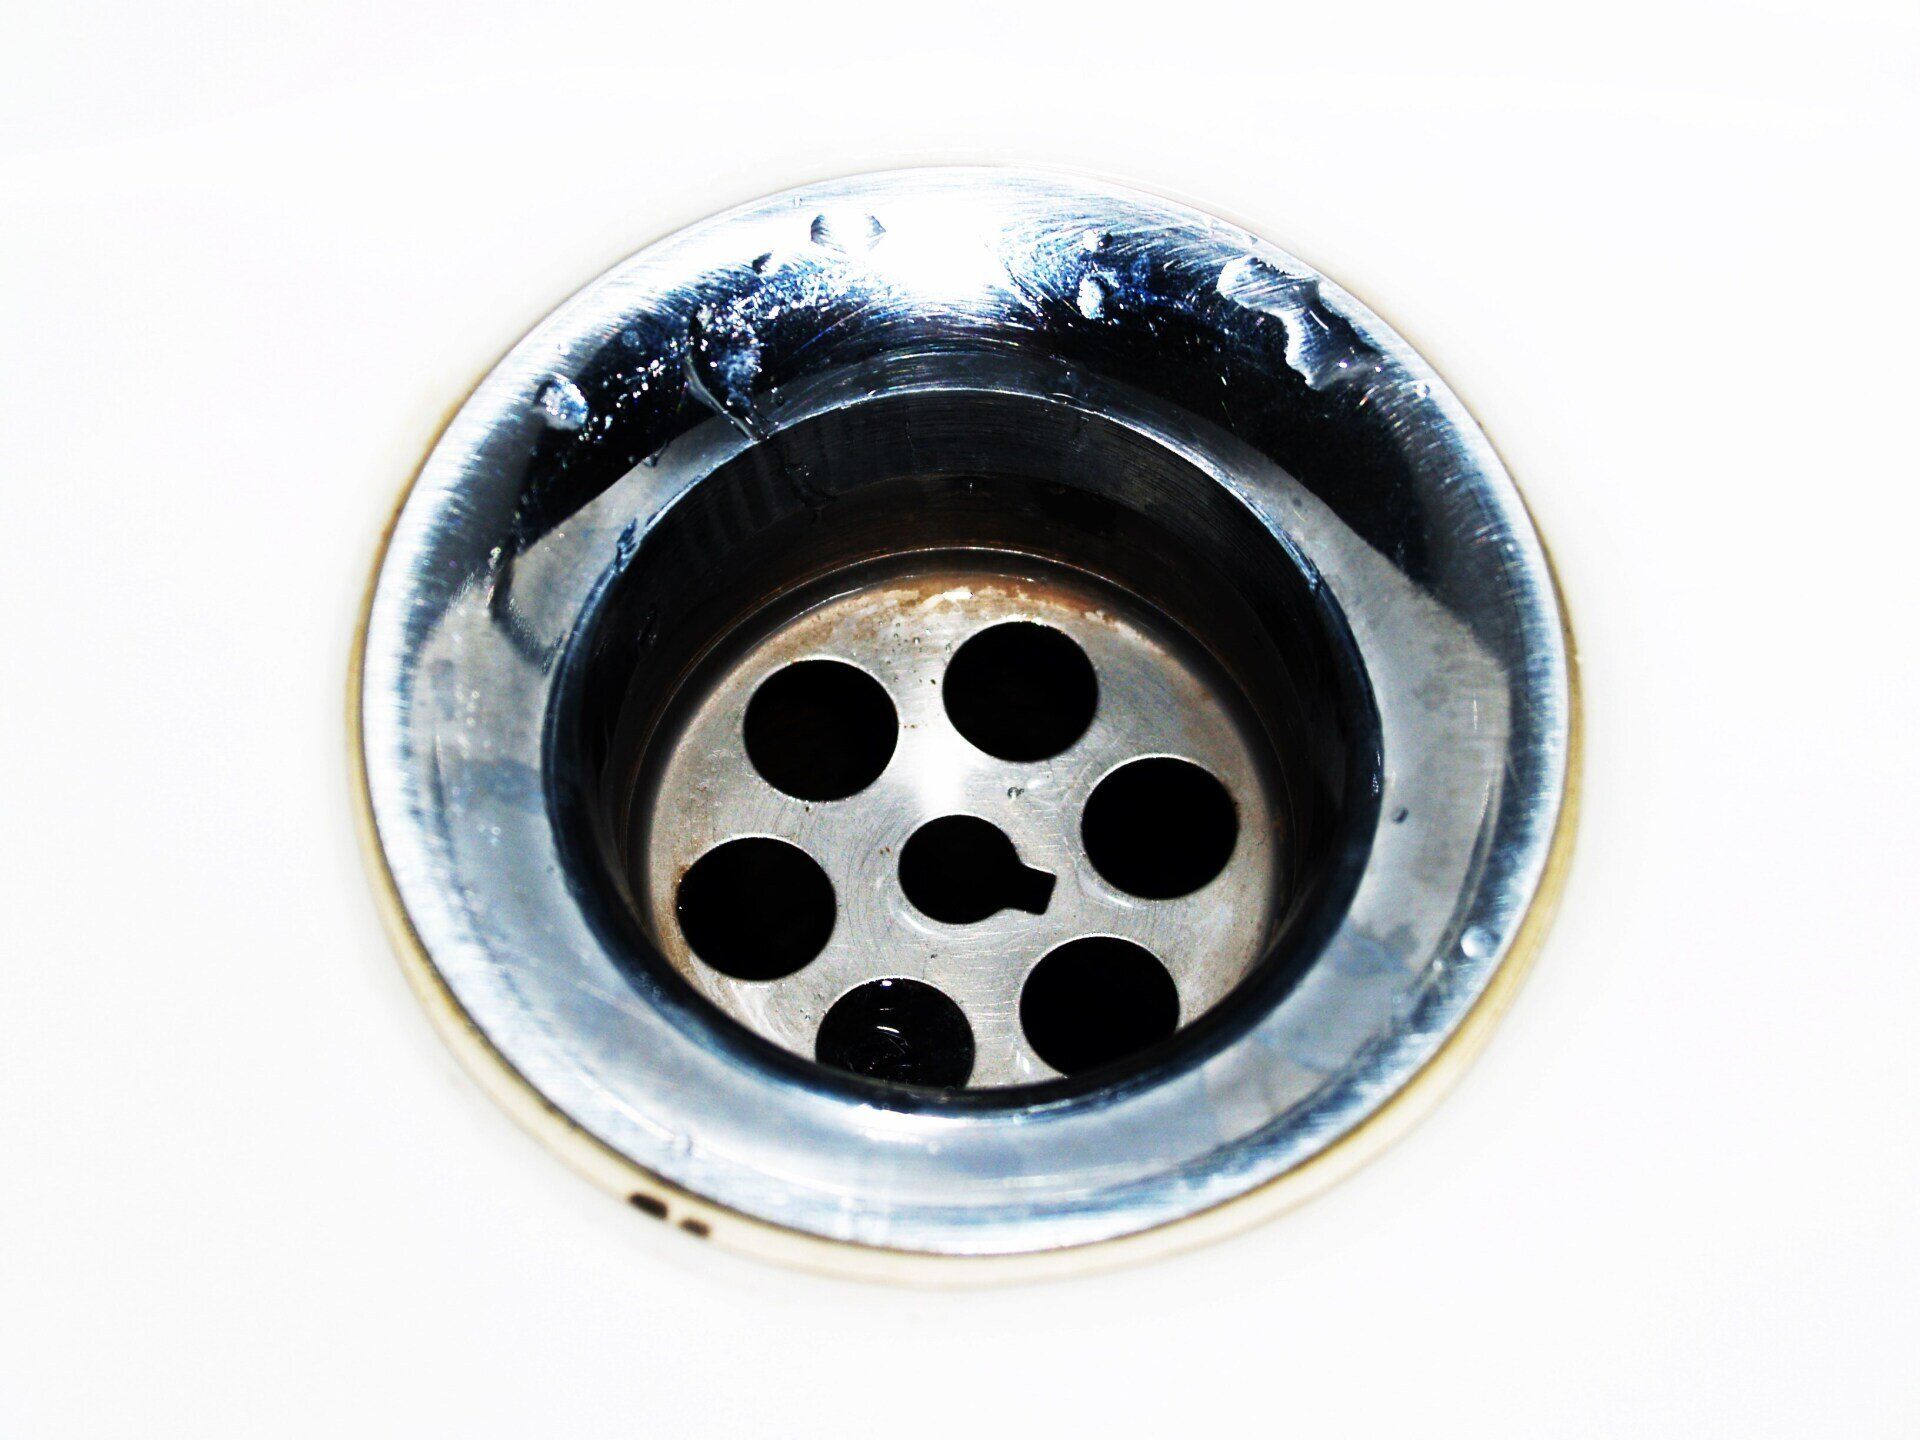 a kitchen sink drain